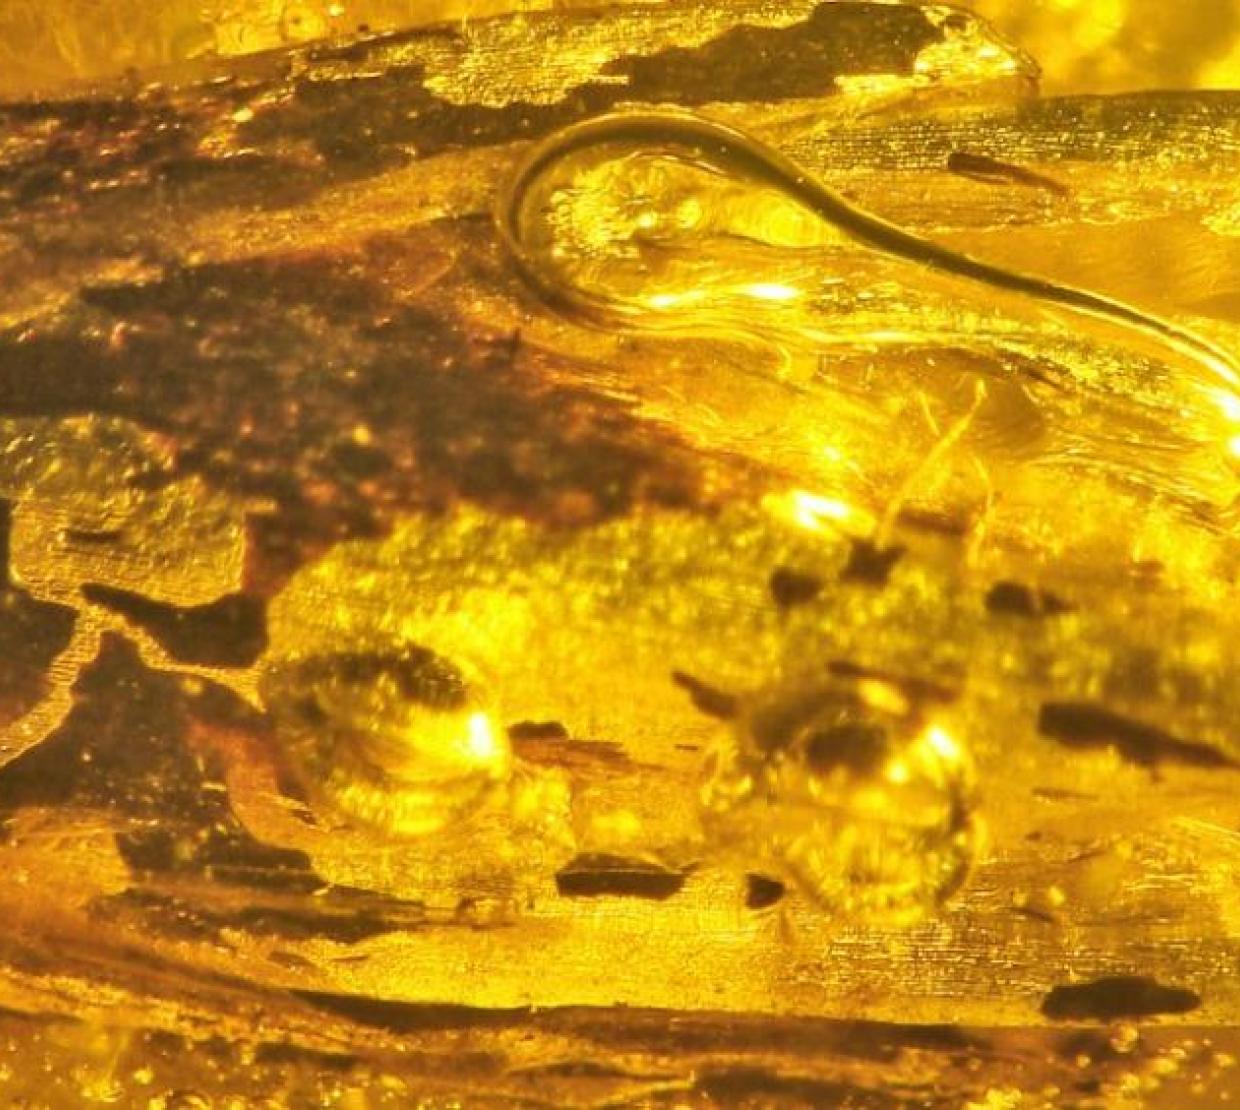 Eograminis balticus encased in amber.